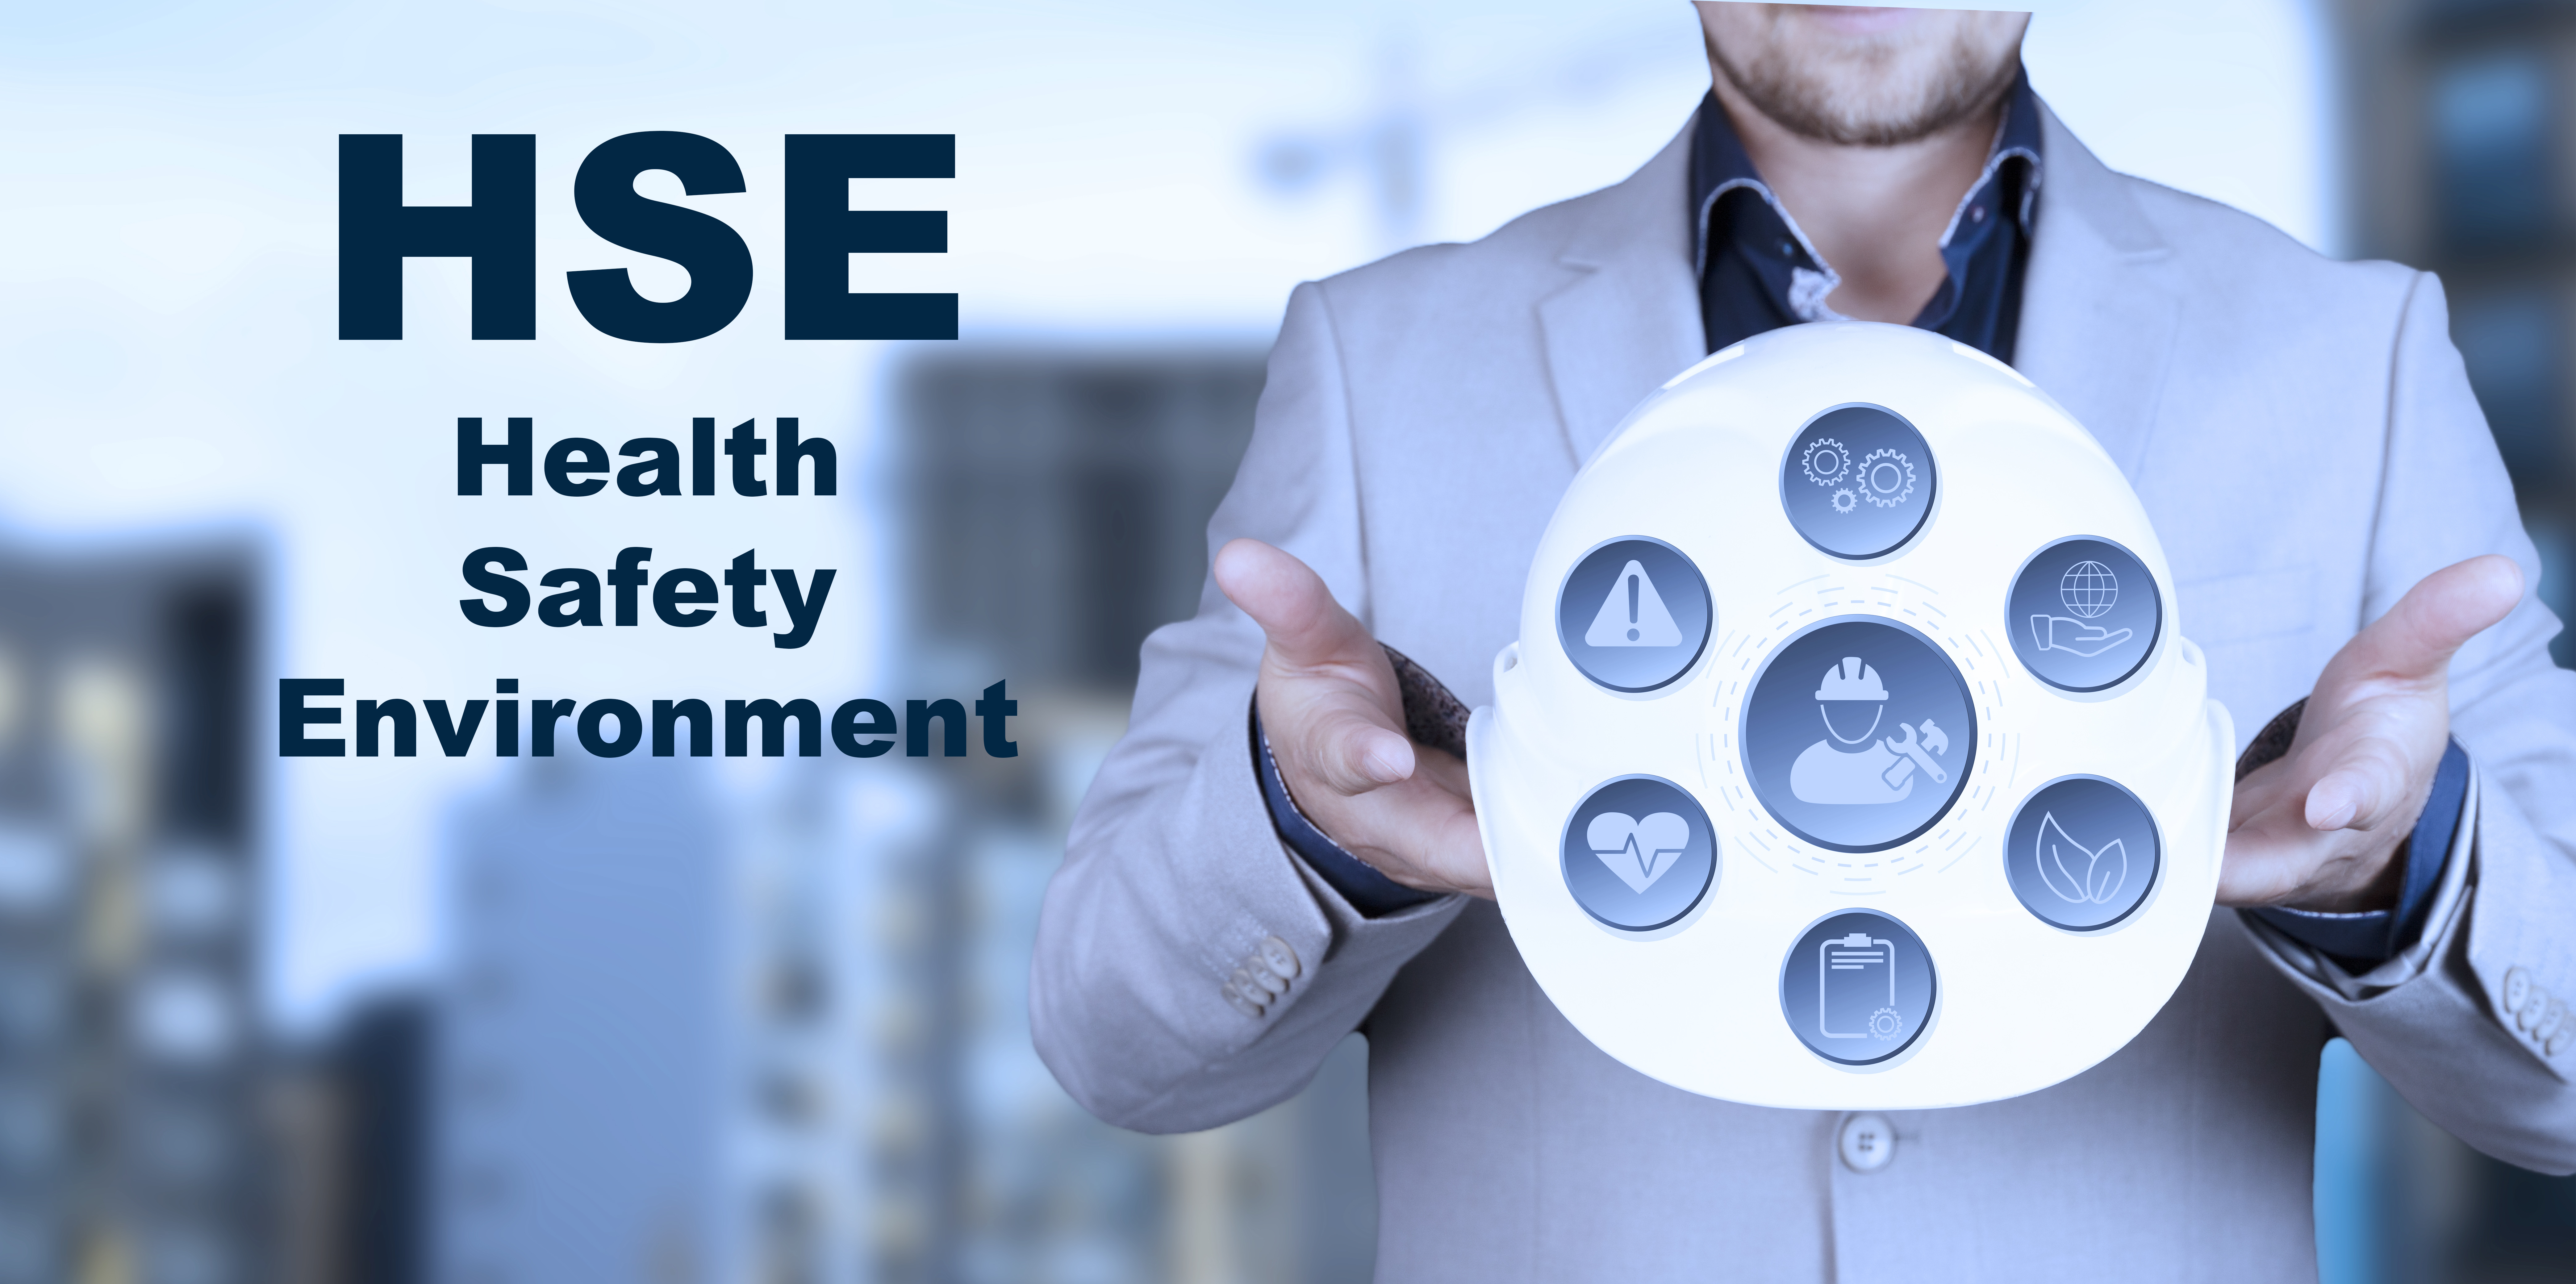 HSE Management: come migliorare i sistemi di gestione e qual è il ruolo della leadership?